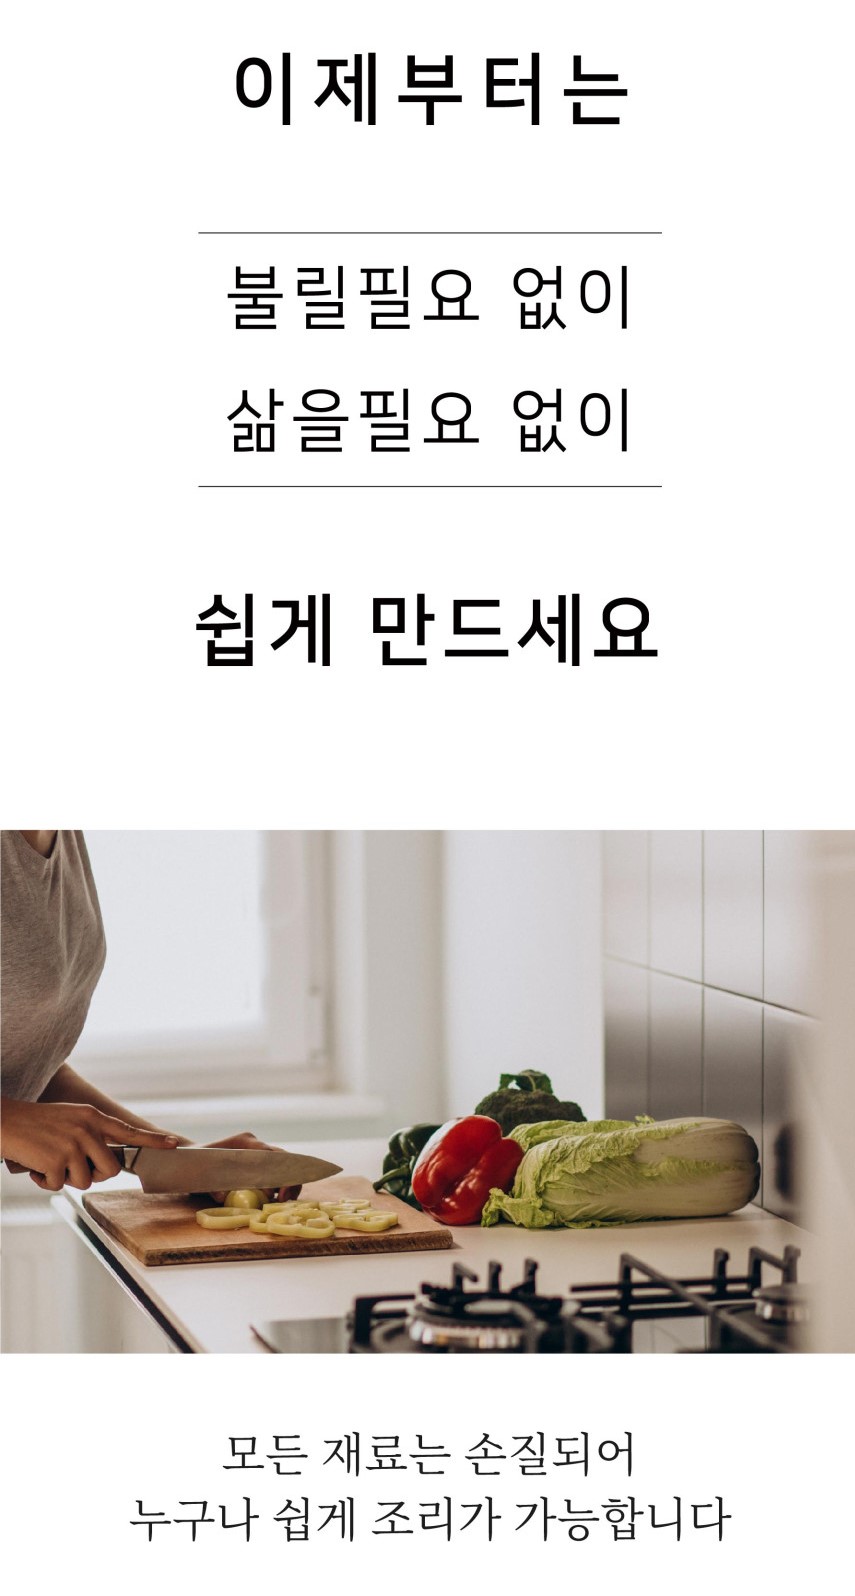 韓國食品-[독도담은] 밥은, 병아리콩밥 274g